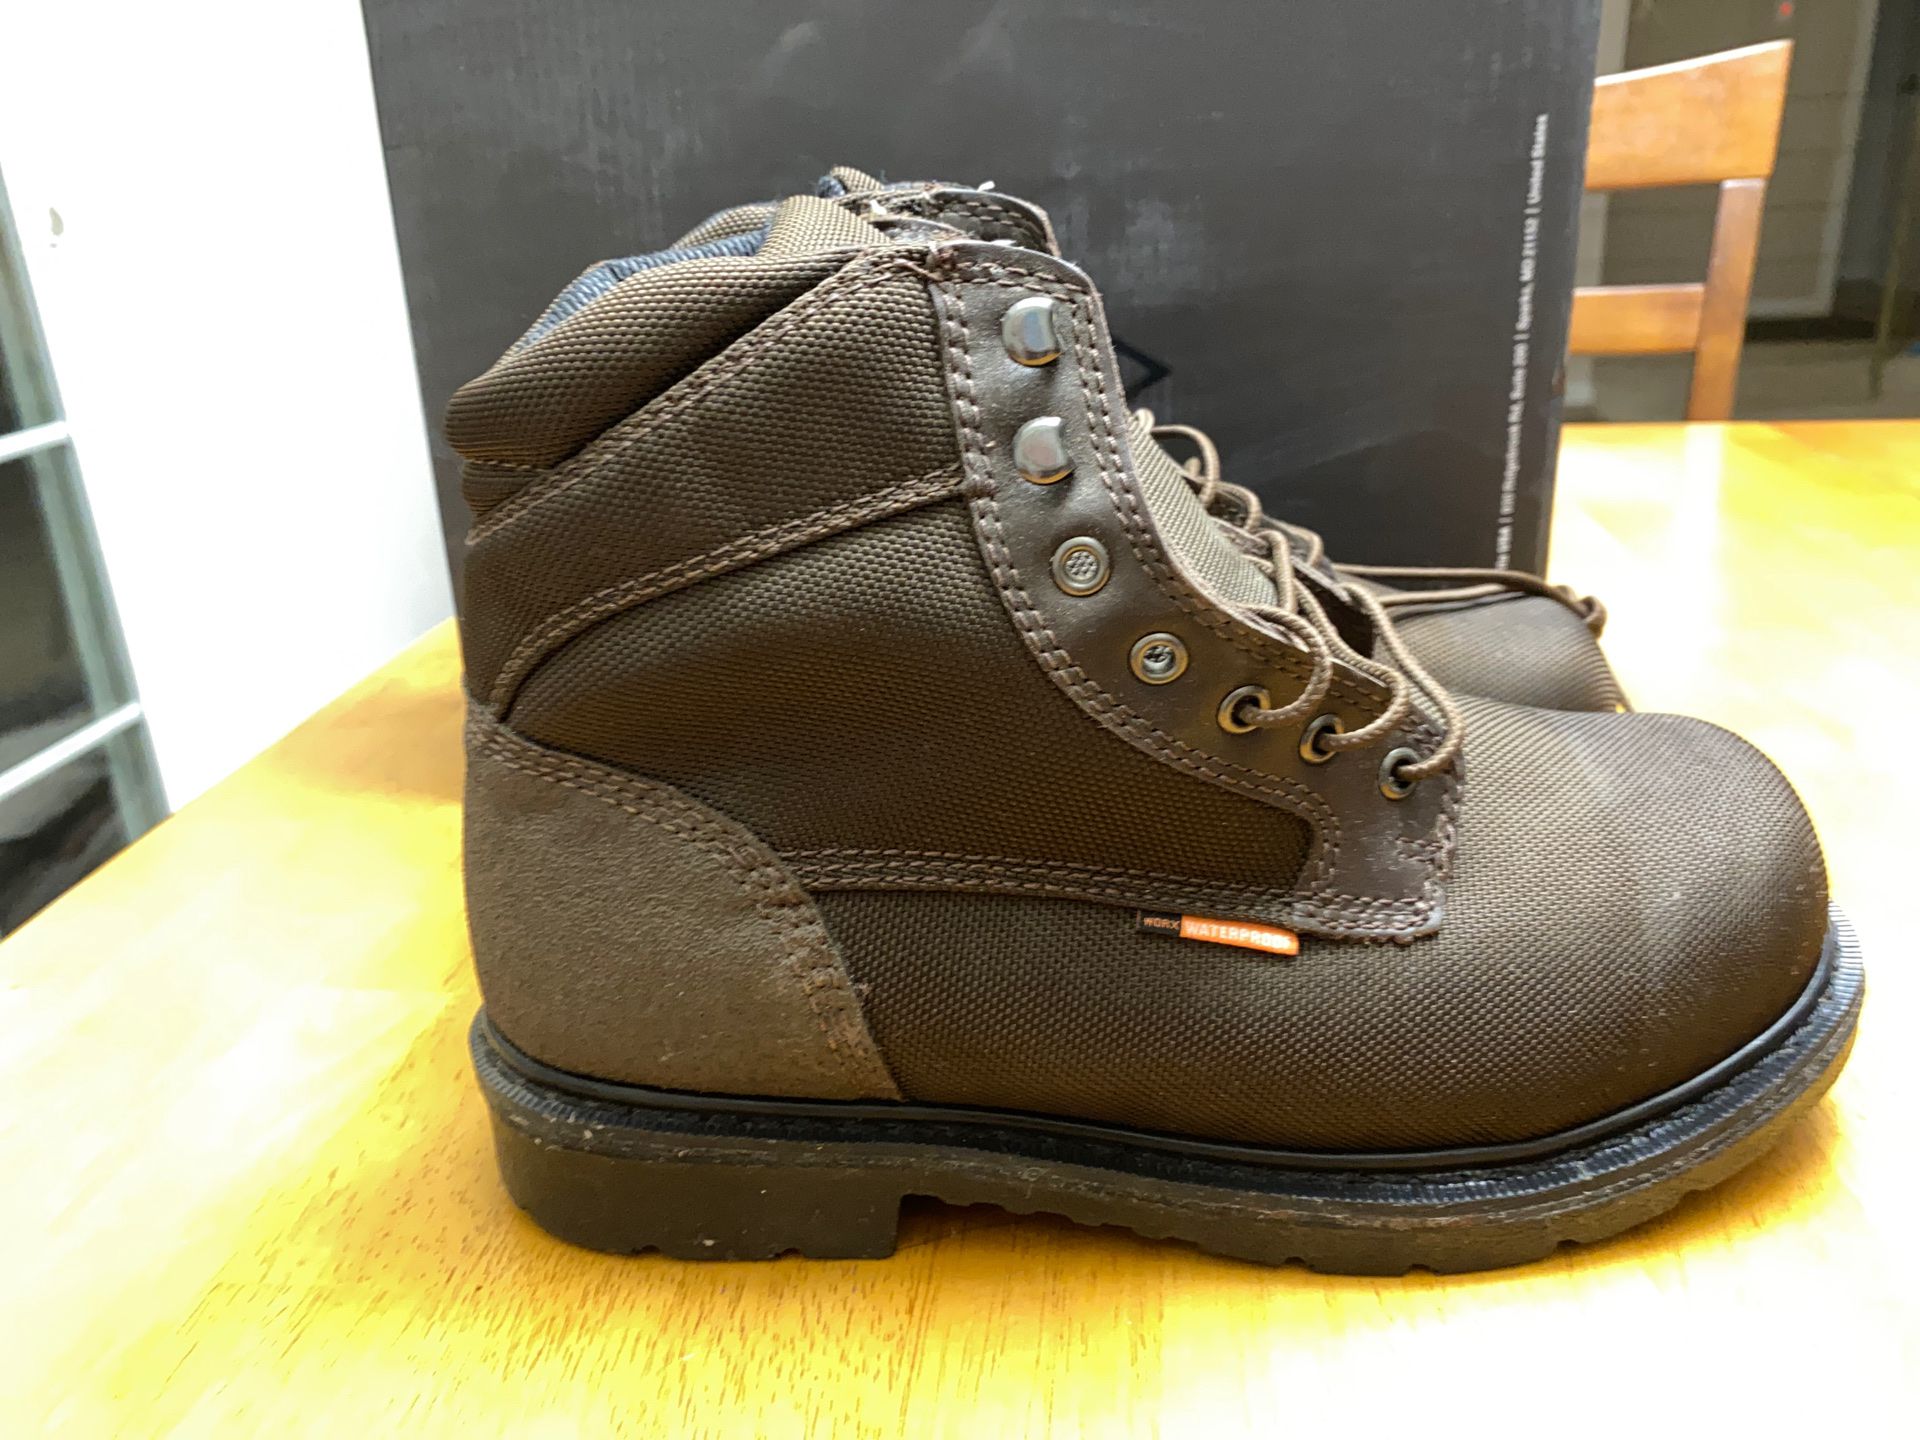 Steel Toe Worx waterproof Work Boots - size 9M New w/tags